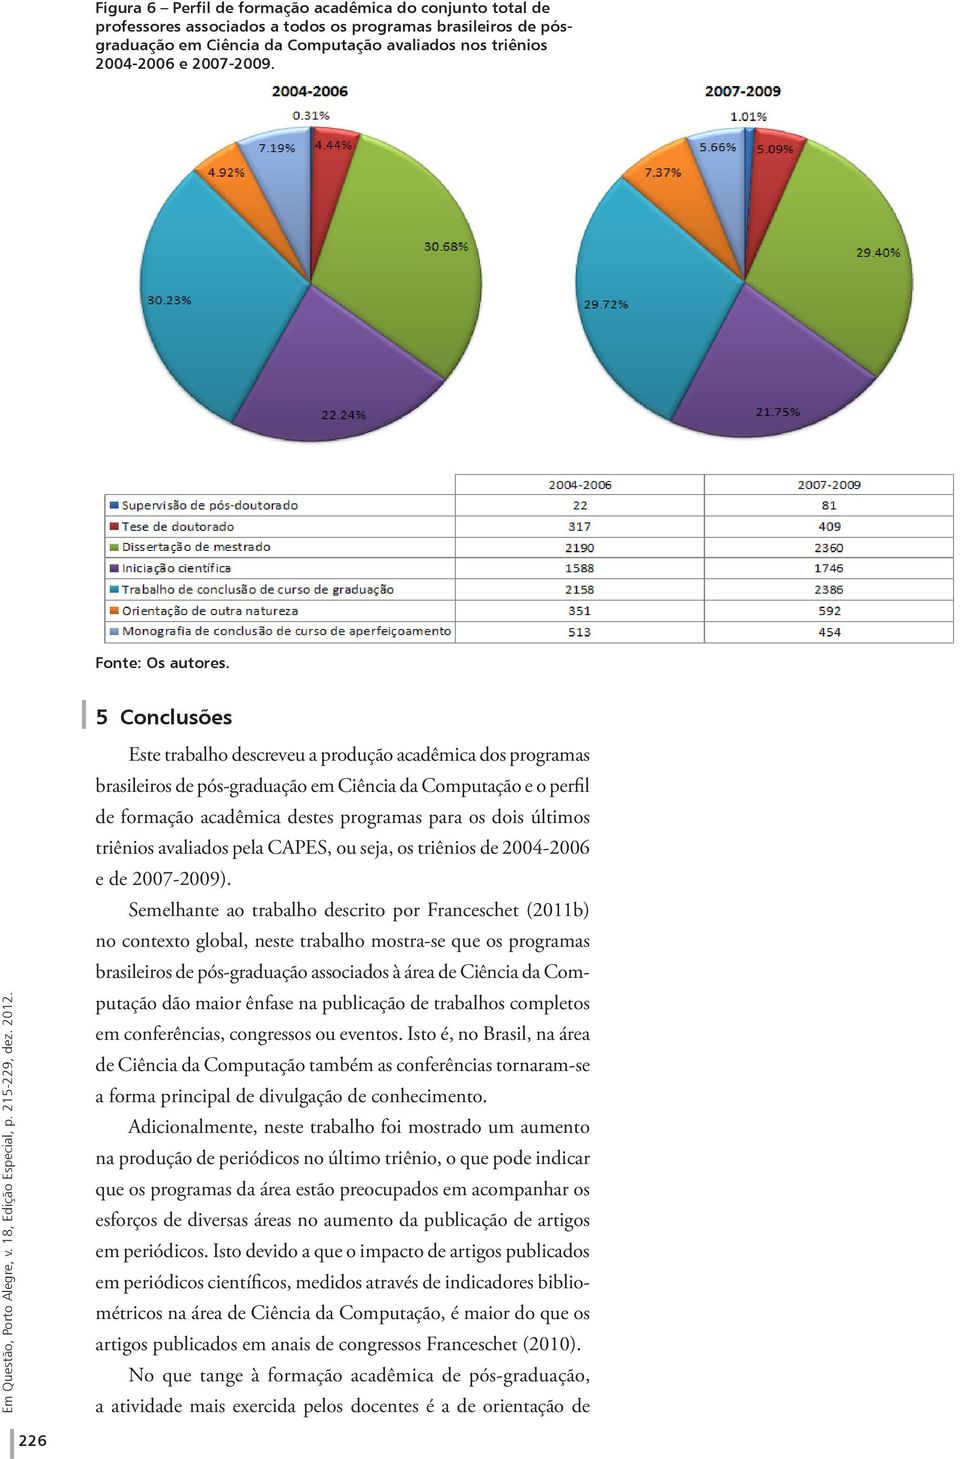 5 Conclusões Este trabalho descreveu a produção acadêmica dos programas brasileiros de pós-graduação em Ciência da Computação e o perfil de formação acadêmica destes programas para os dois últimos